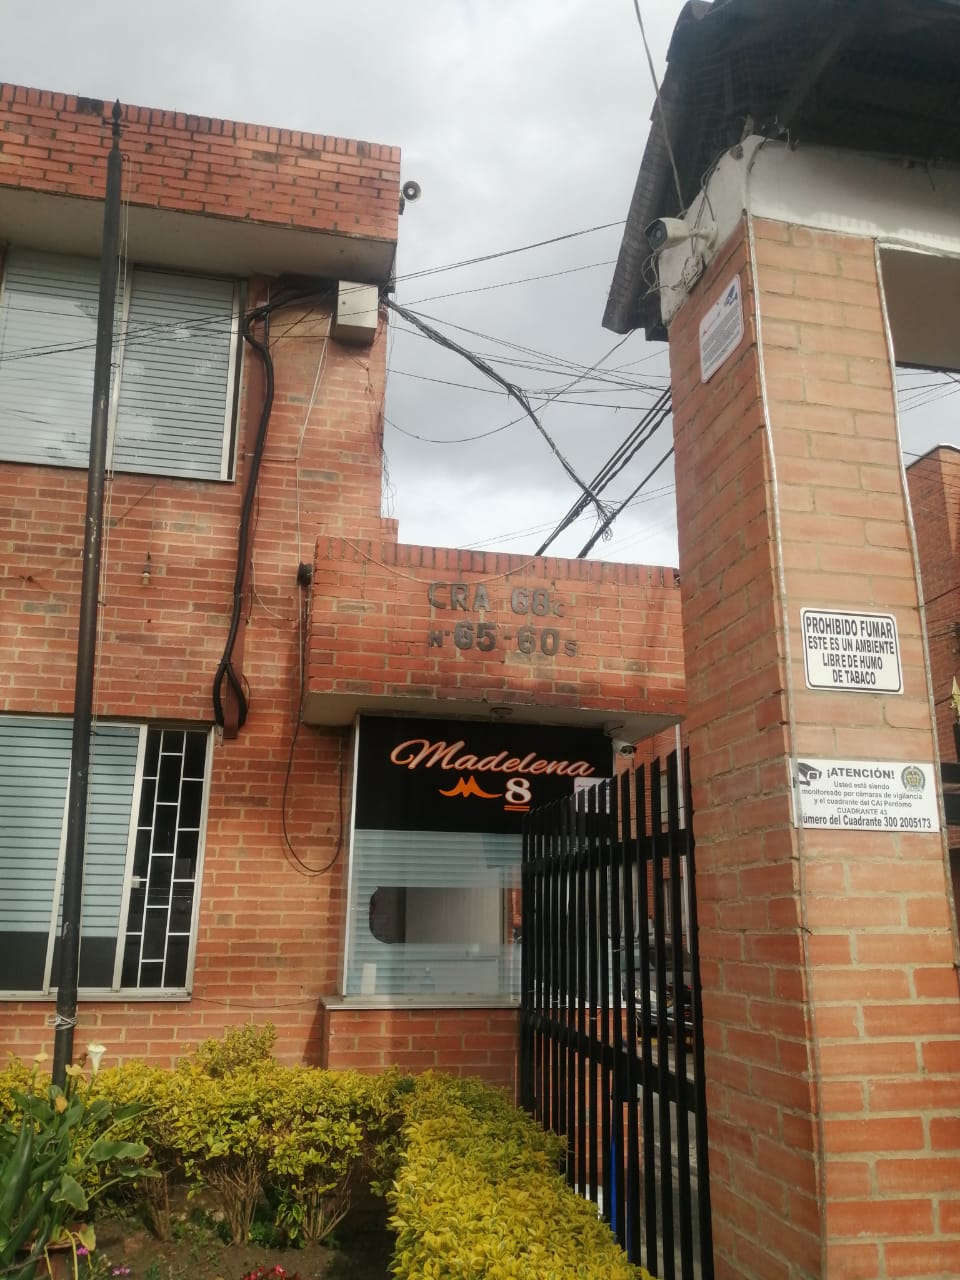 Casa en Venta por Bienco S.A ubicado en Bogotá. El código del inmueble es: 6026664